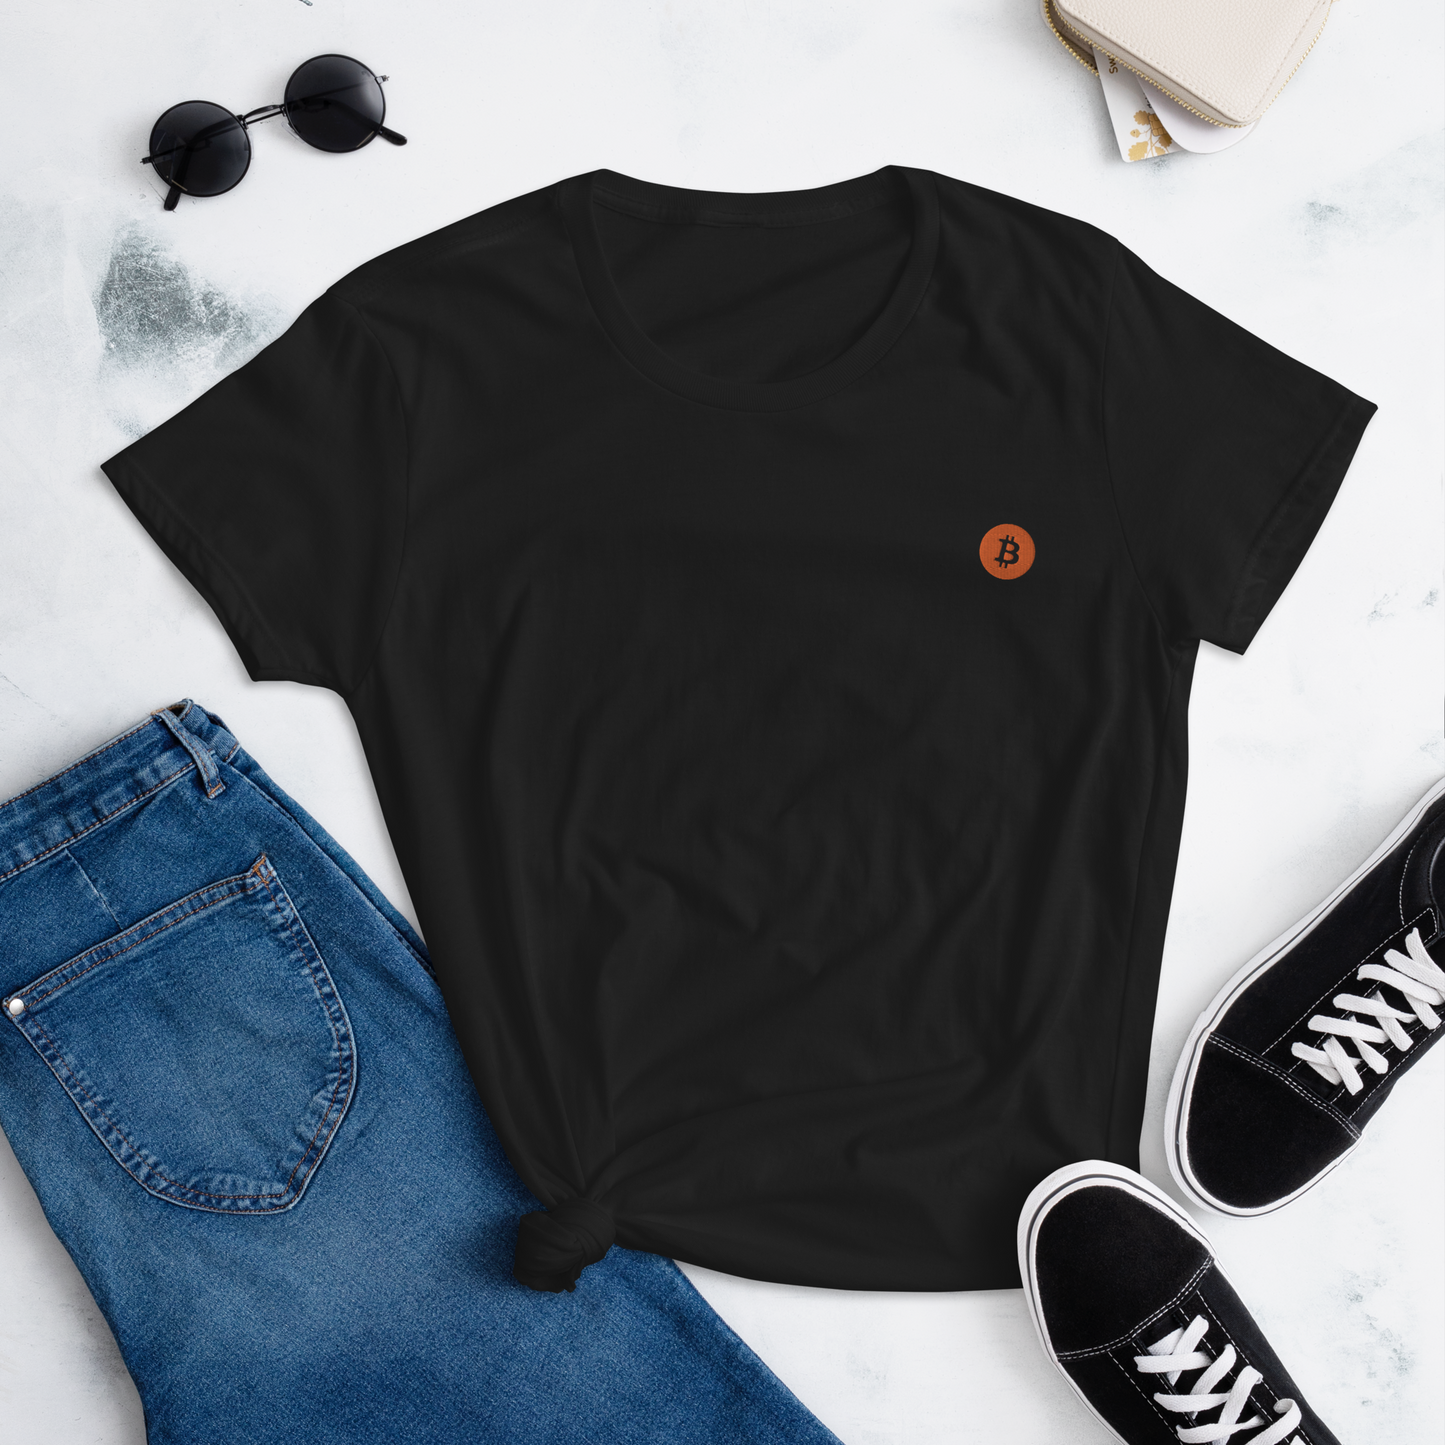 Bitcoin (BTC) - Women's short sleeve t-shirt